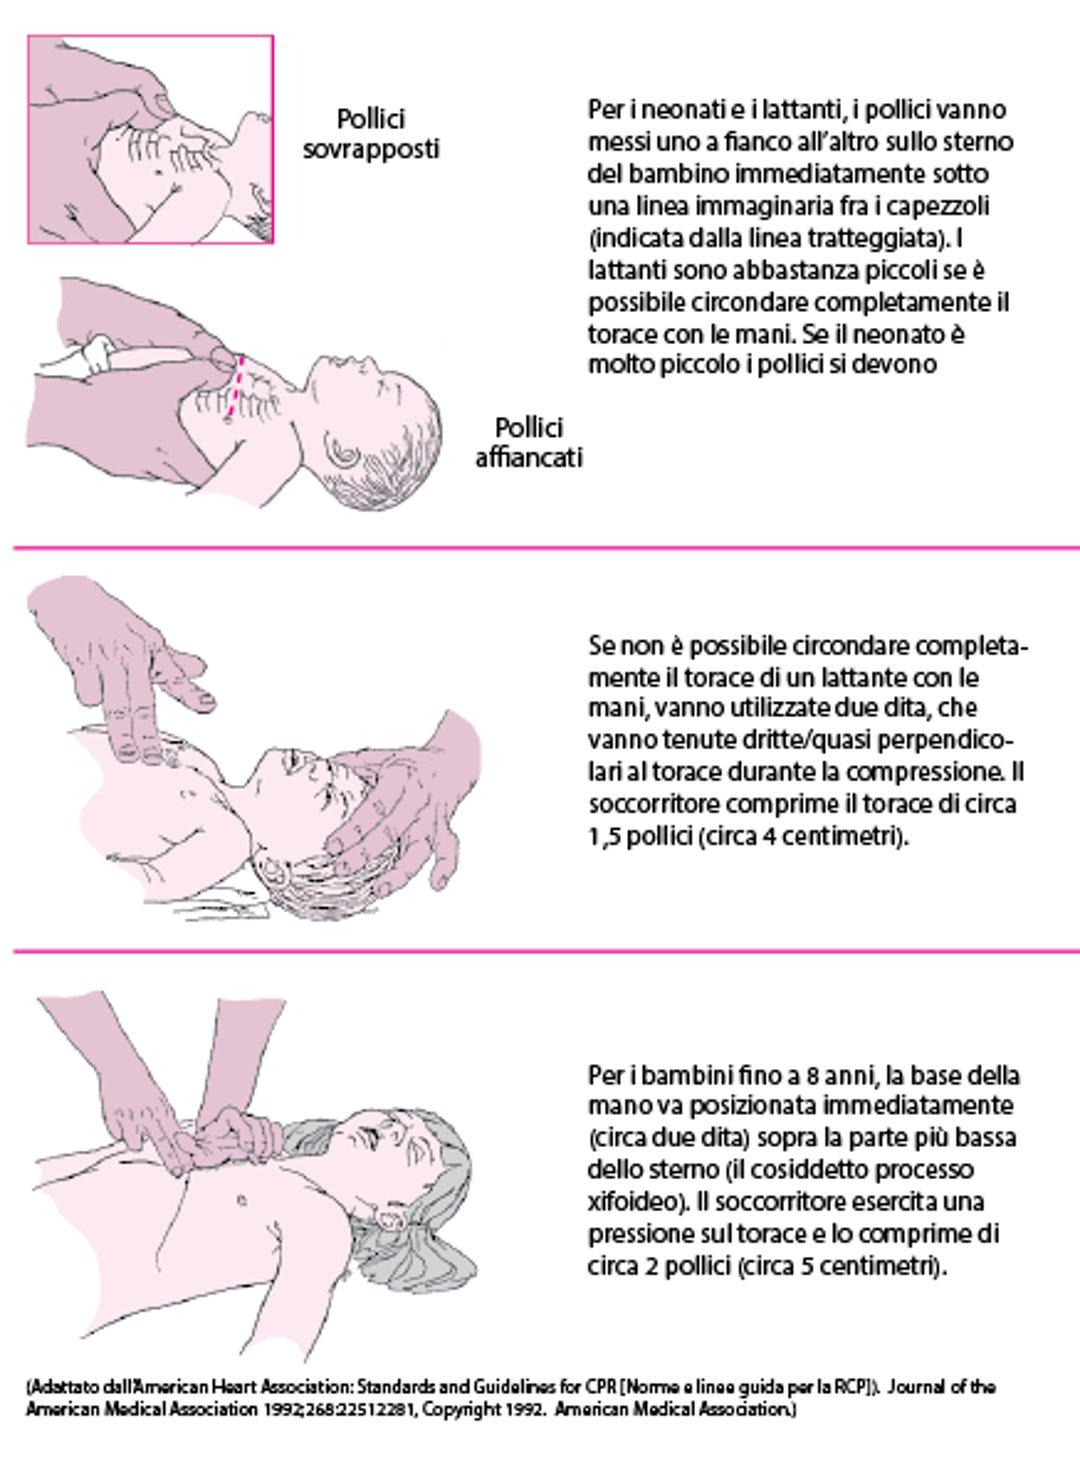 Come eseguire il massaggio cardiaco nei neonati